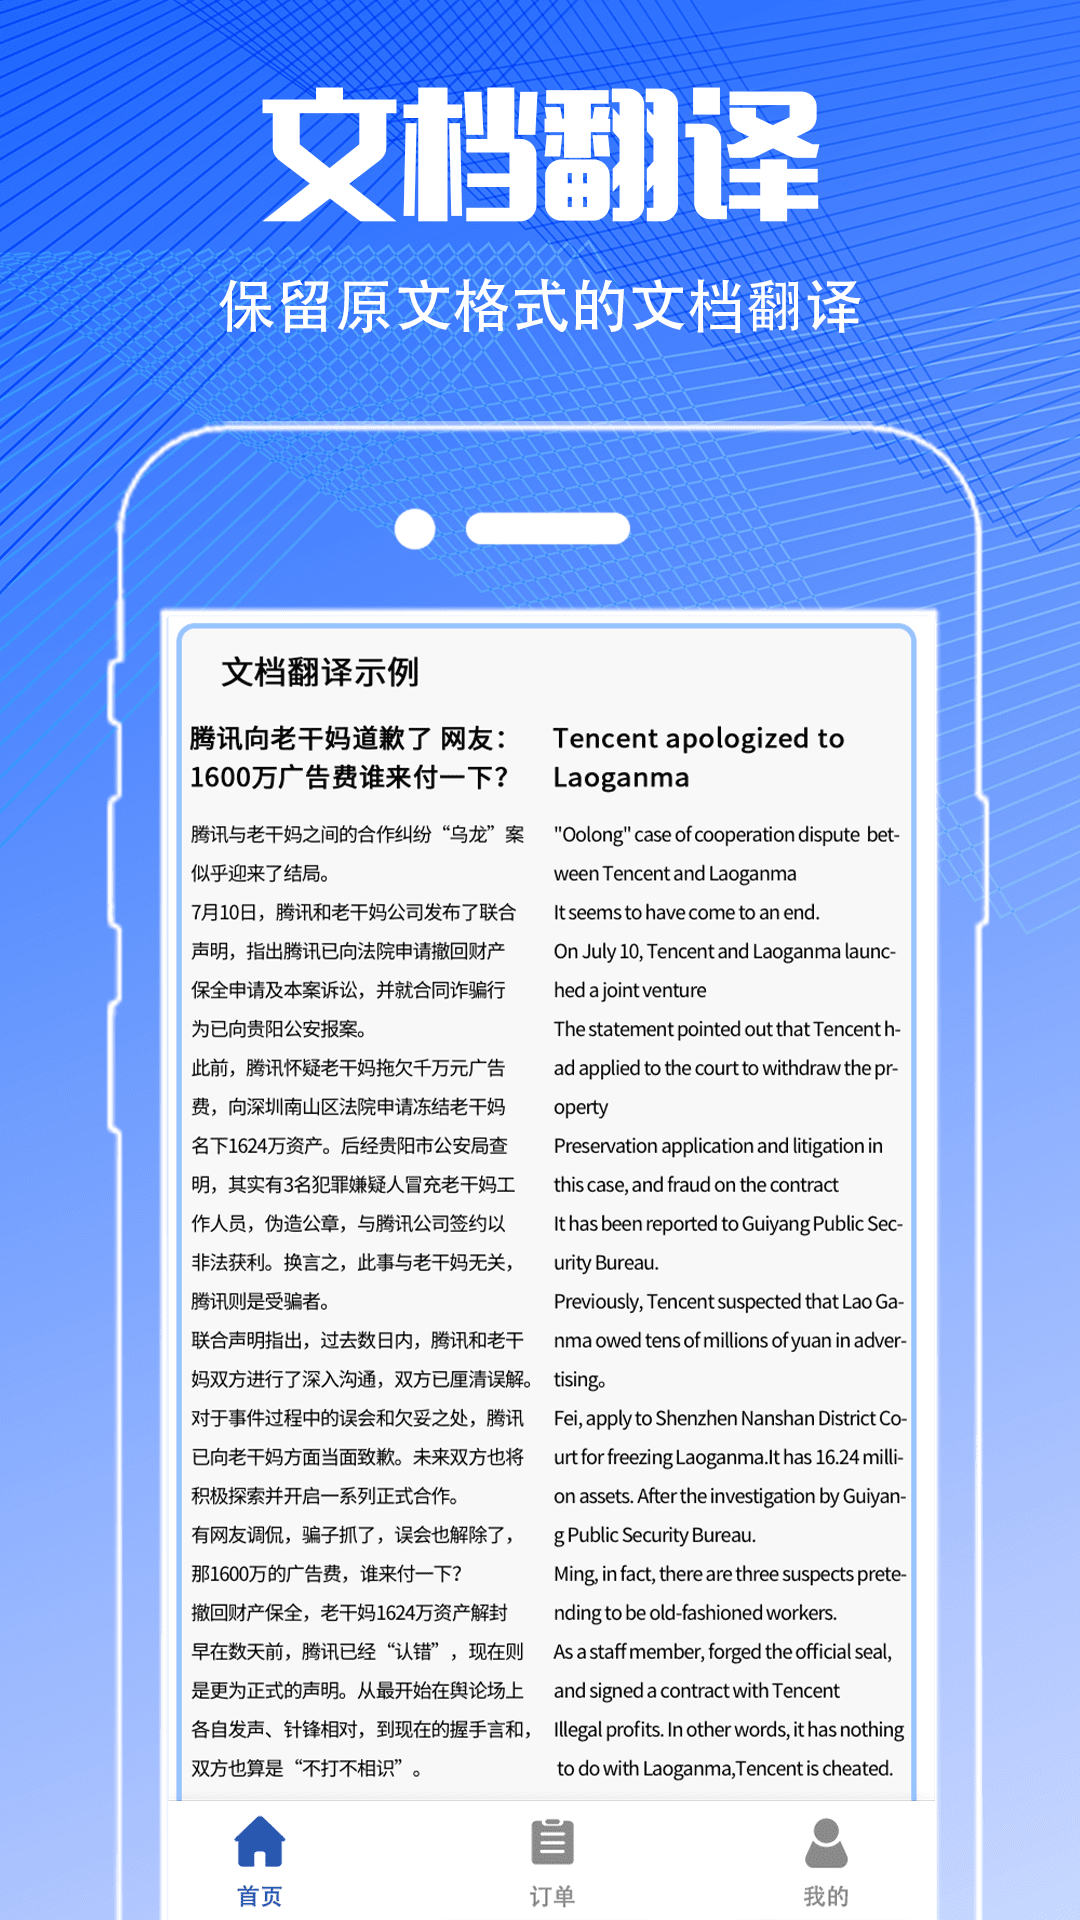 PDF扫描翻译全能王 截图4